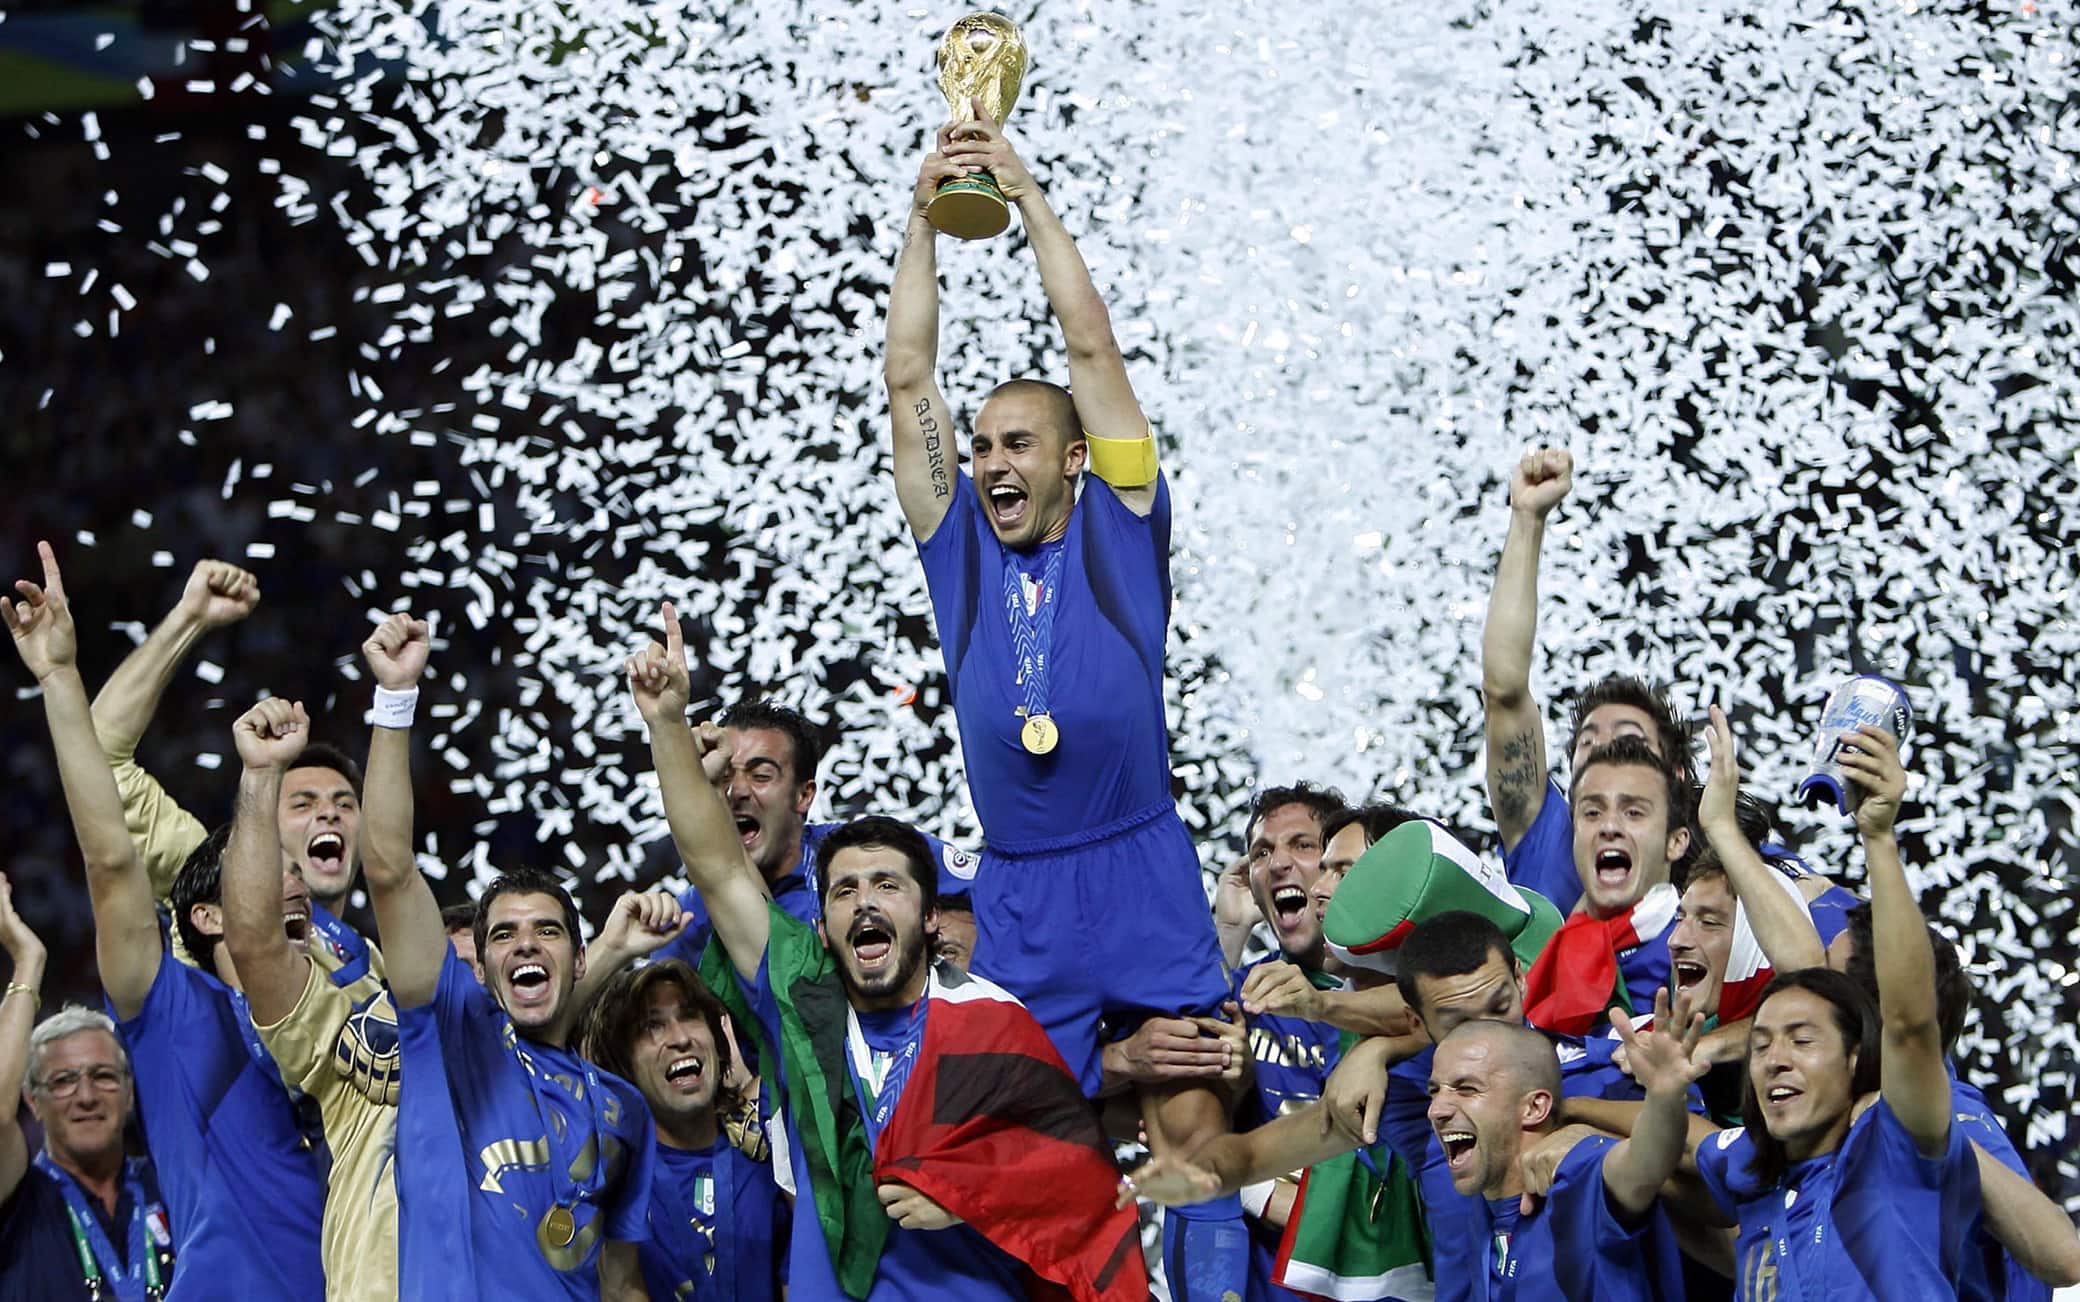 20060709 - BERLINO - SPR - MONDIALI: CANNAVARO SOLLEVA LA COPPA DEL MONDO. Il capitano della Nazionale, Fabio Cannavaro, alza al cielo la Coppa del Mondo, tra i compagni di squadra, al termine della finale del Mondiale 2006 tra Italia a Francia, oggi all'Olympiastadion di Berlino. L'Italia ha vinto il titolo mondiale. In finale ha battuto la Francia 6-4 dopo i rigori. I tempi regolamentari e i supplementari si erano conclusi 1-1. +++ Mobile Services OUT +++ Please refer to FIFA's Terms and Conditions +++ DANIEL DAL ZENNARO - ANSA - KRZ